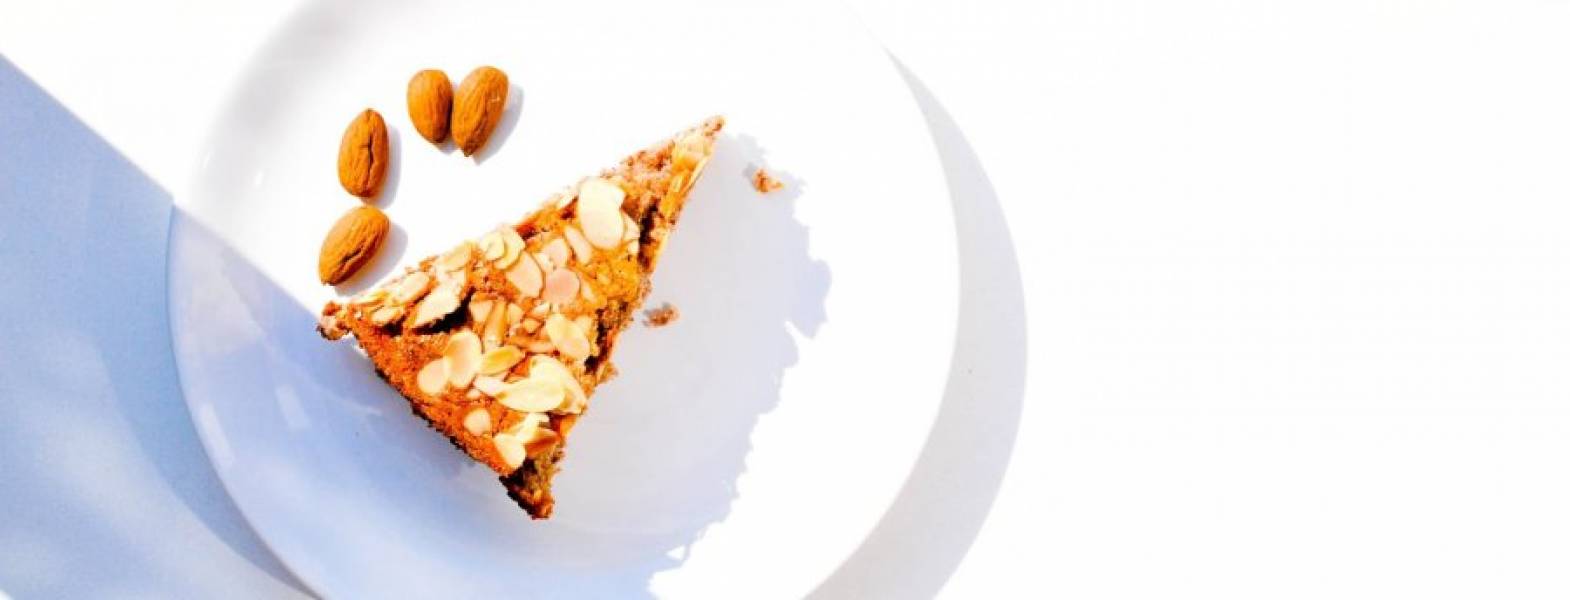 Ciasto Migdałowe Nigelli Lawson - dieta bezmleczna